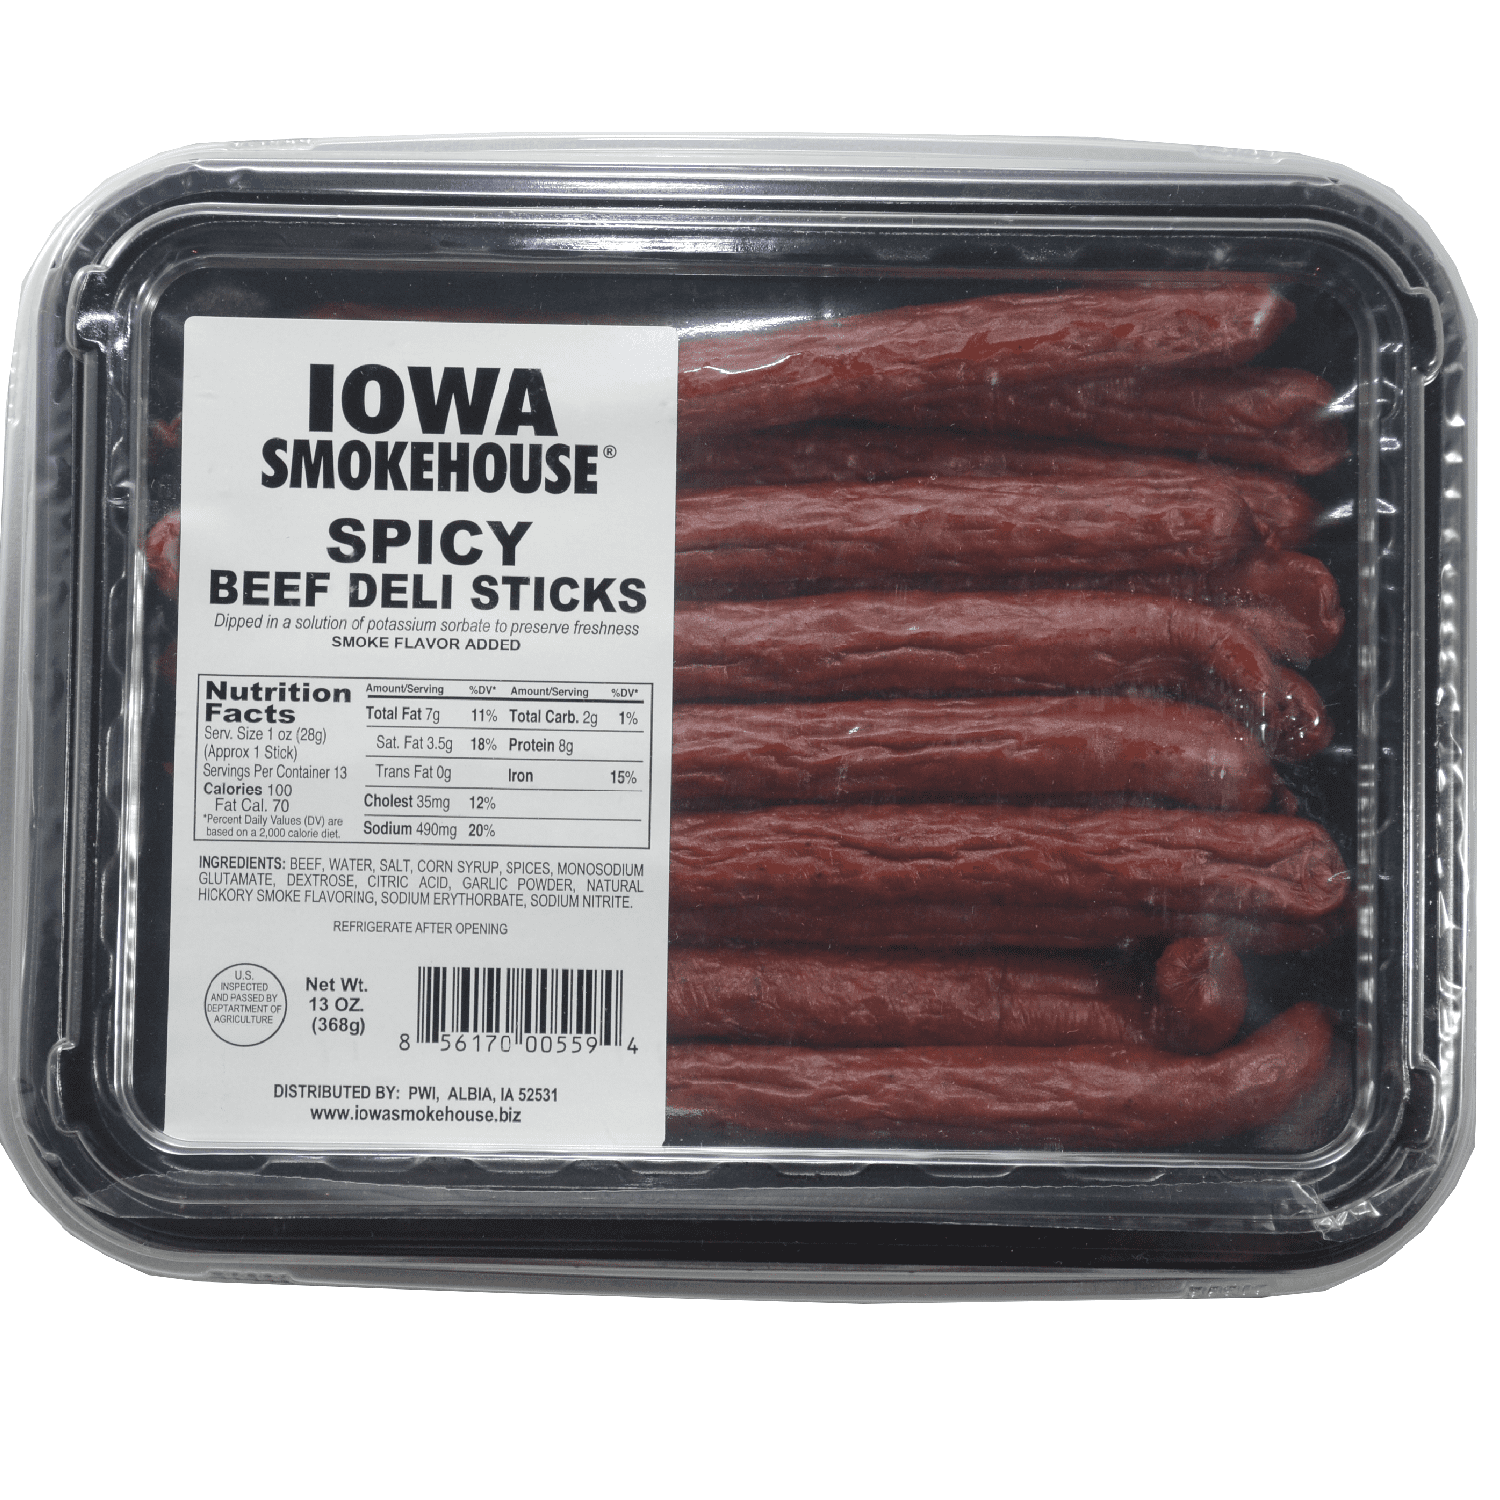 13 oz Beef DELI Sticks Spicy - IOWA SMOKEHOUSE